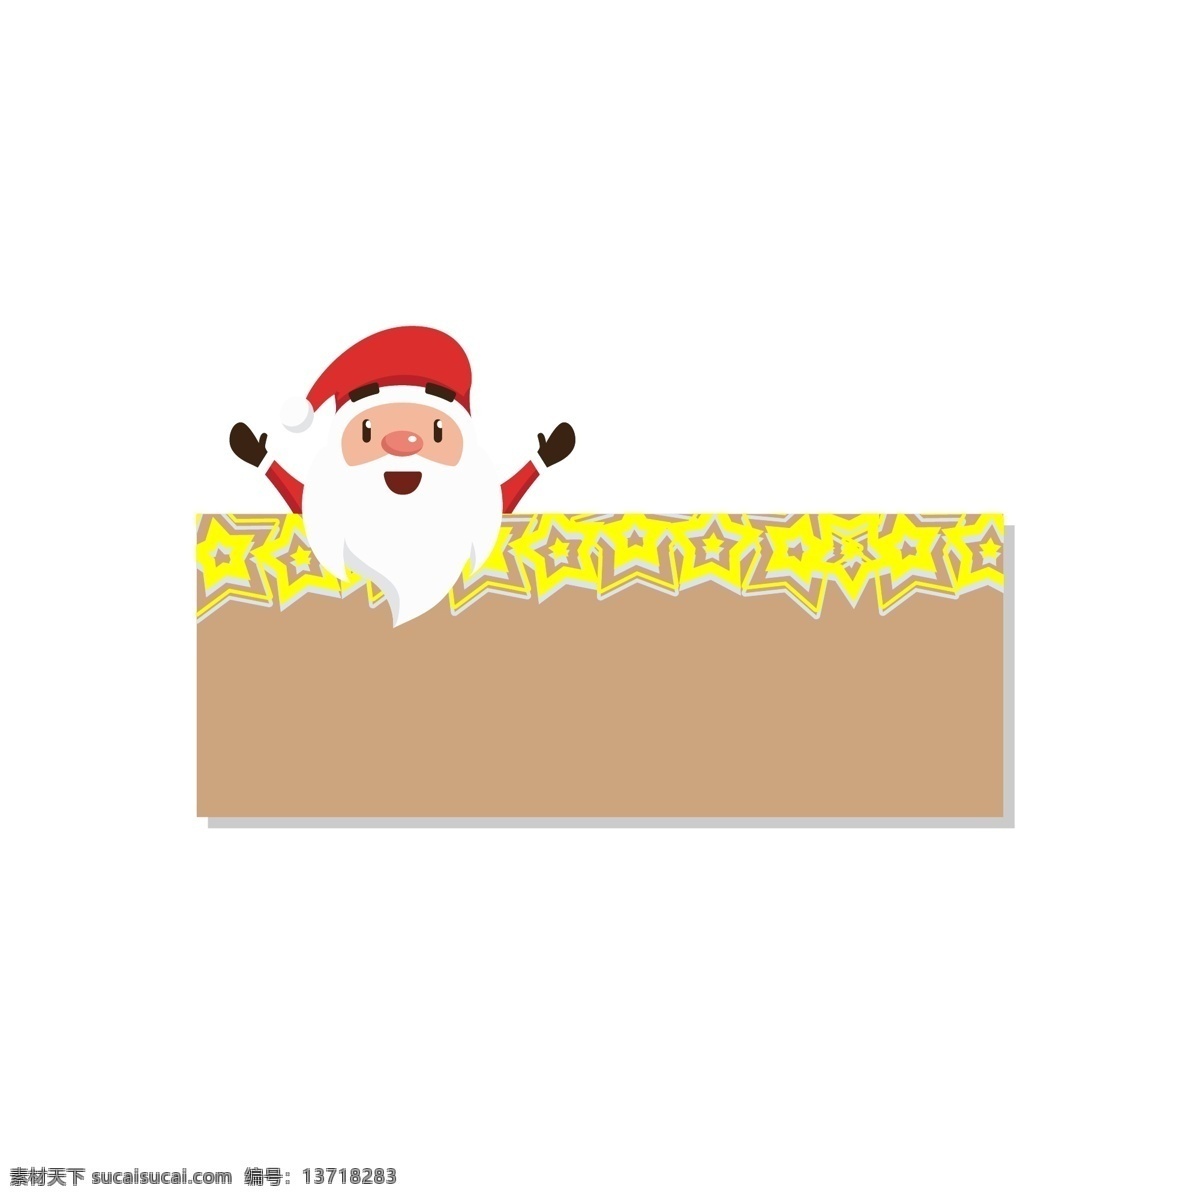 圣诞节 促销活动 标签 对话框 节日标签 卡通边框 扁平 简洁 戴帽子 圣诞老人 星星 可爱手绘